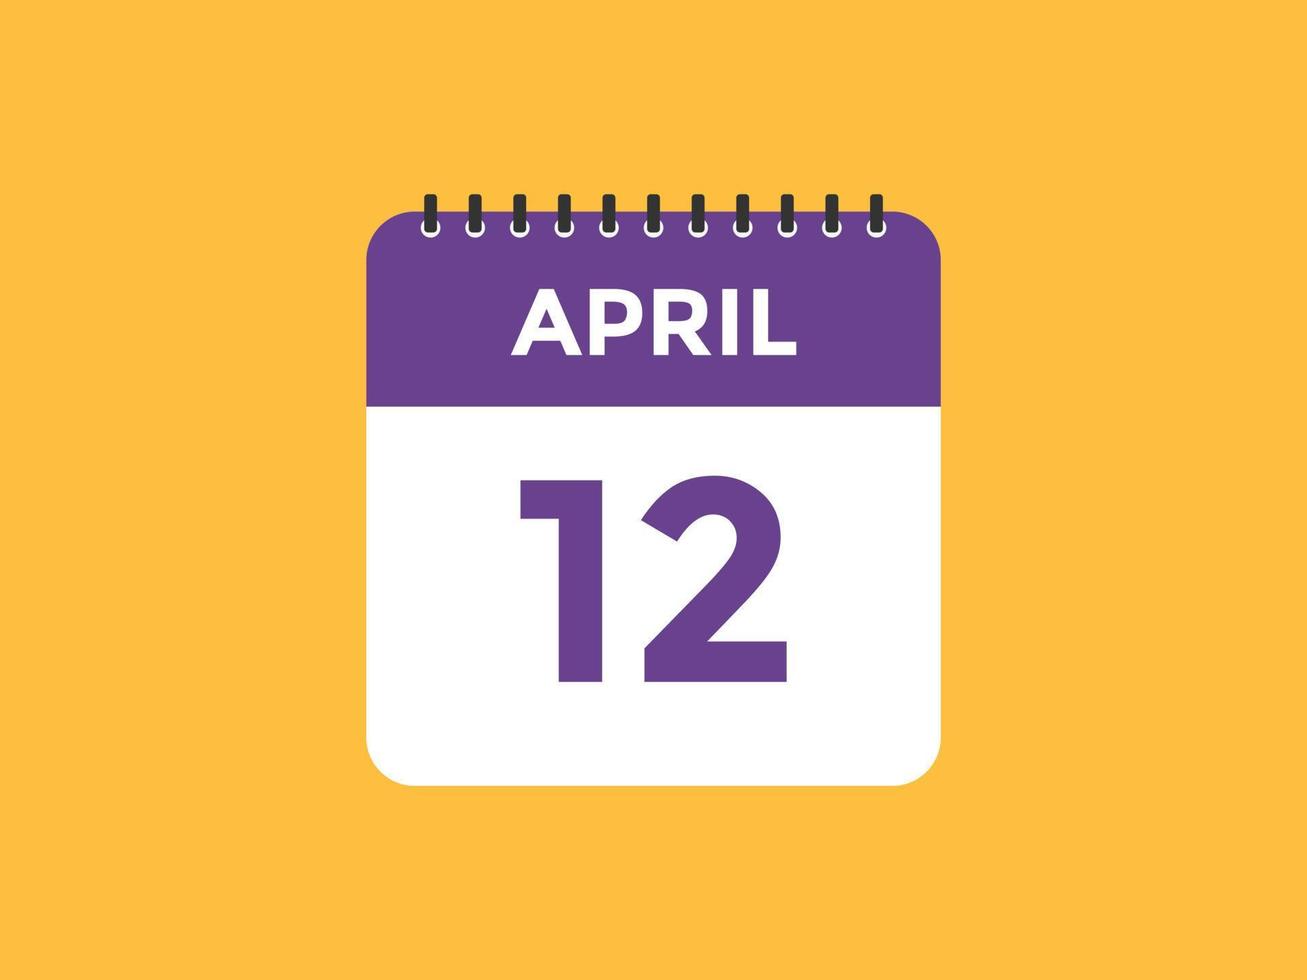 lembrete de calendário de 12 de abril. Modelo de ícone de calendário diário de 12 de abril. modelo de design de ícone de calendário 12 de abril. ilustração vetorial vetor